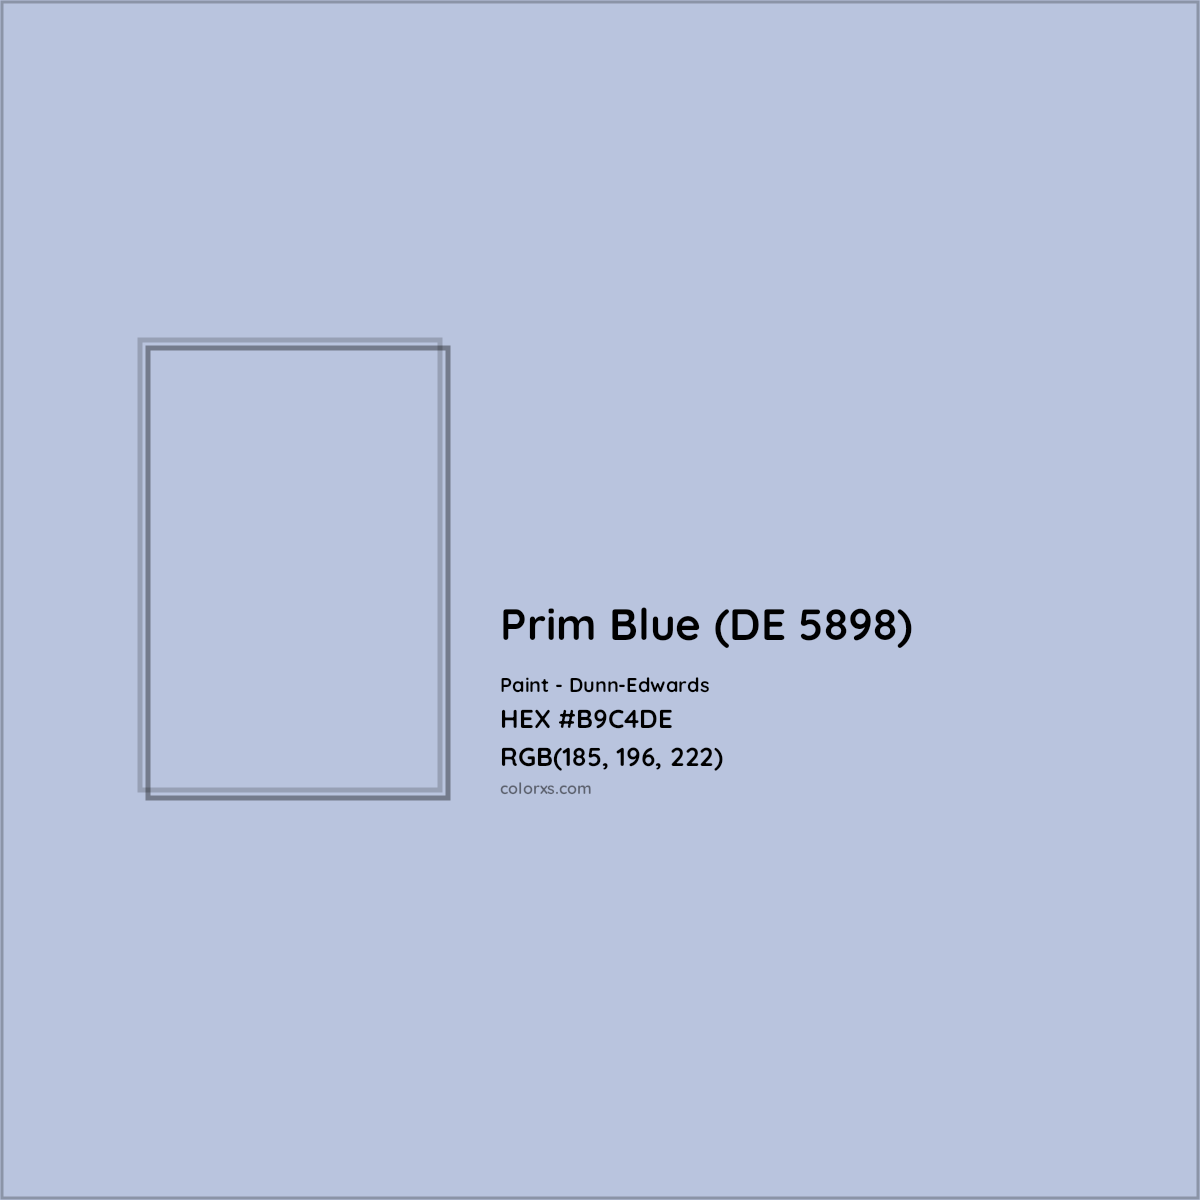 HEX #B9C4DE Prim Blue (DE 5898) Paint Dunn-Edwards - Color Code